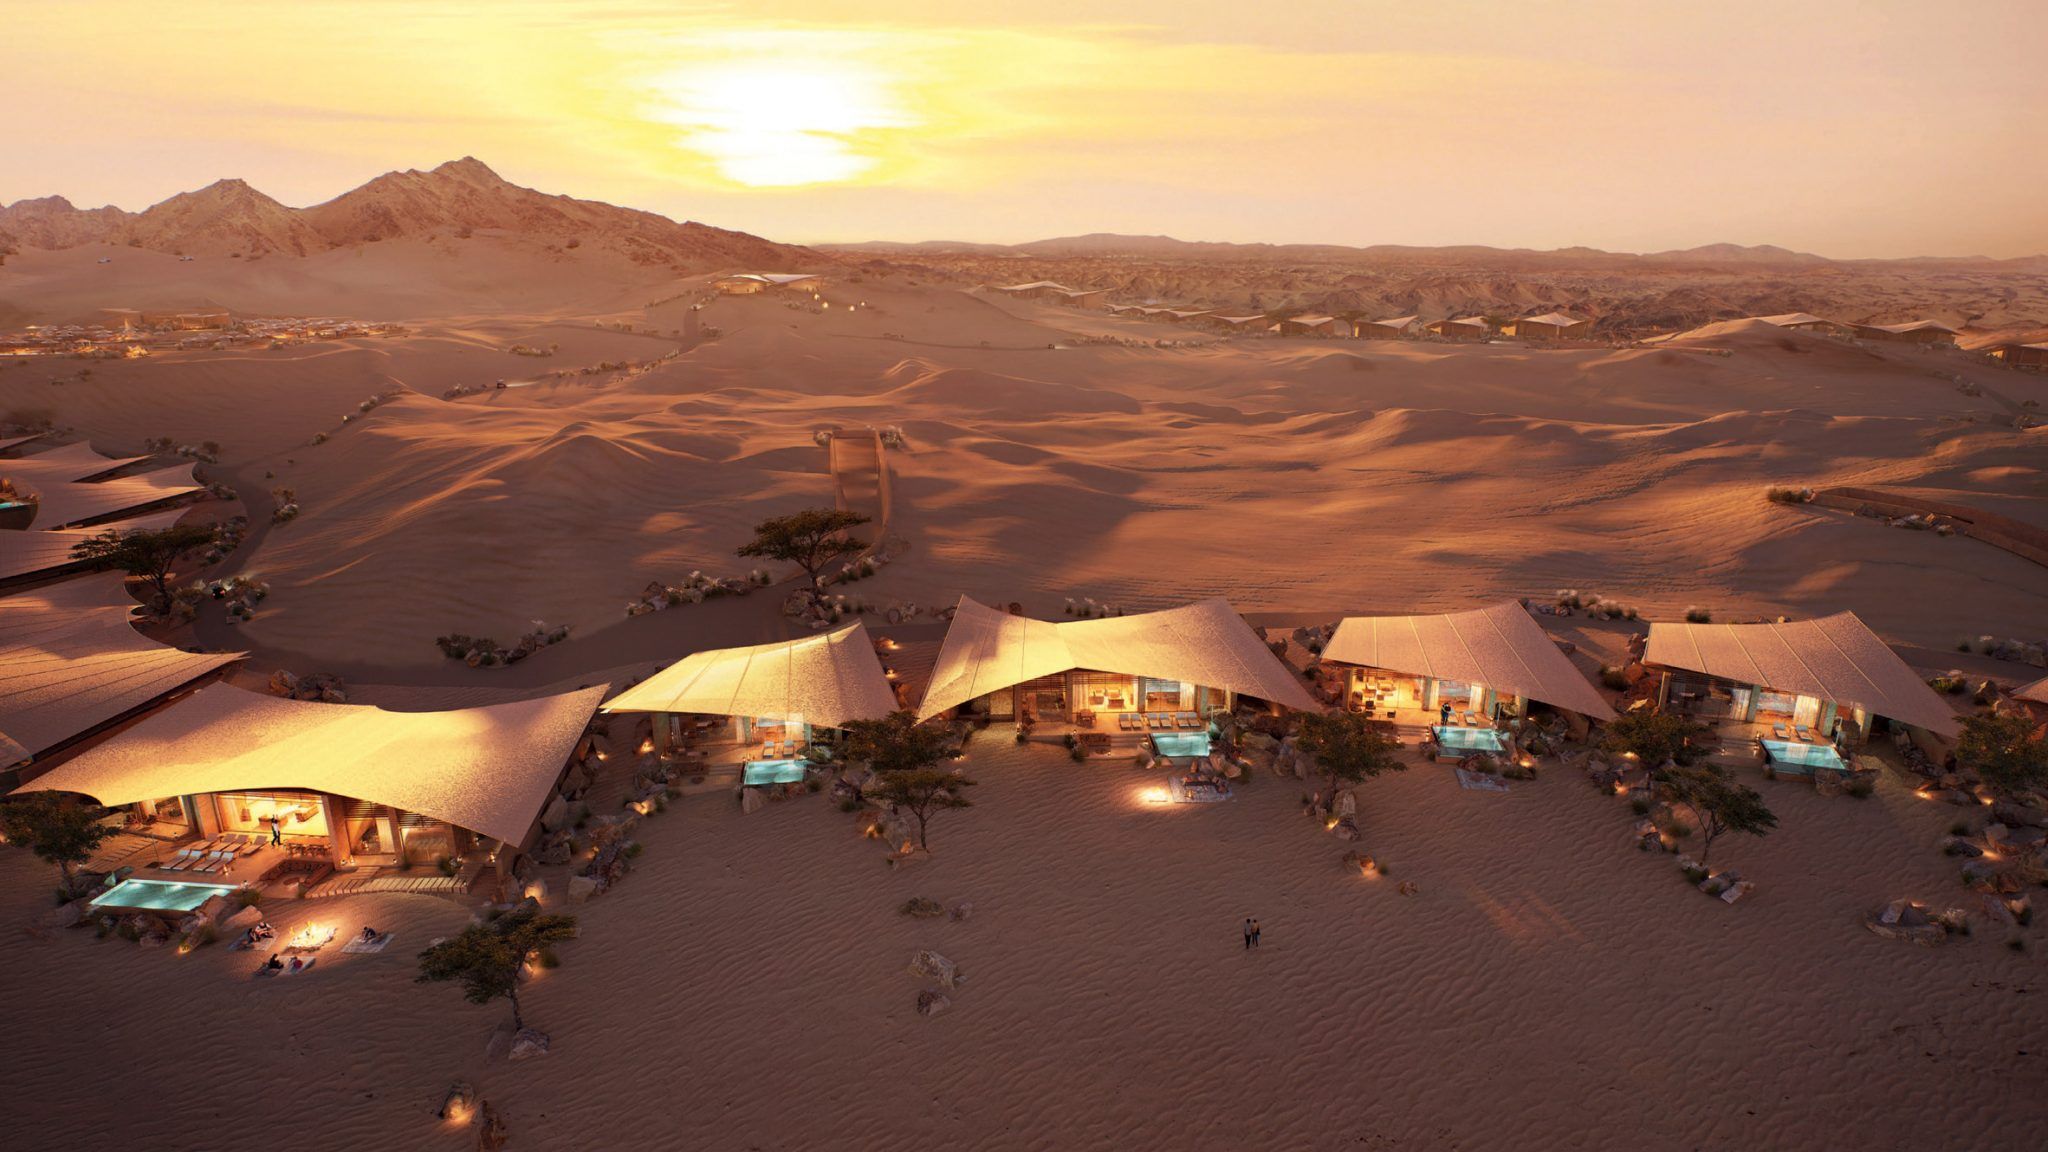 Удивительный отдых в пустыне: сказочный отель в песчаной дюне Саудовской Аравии 